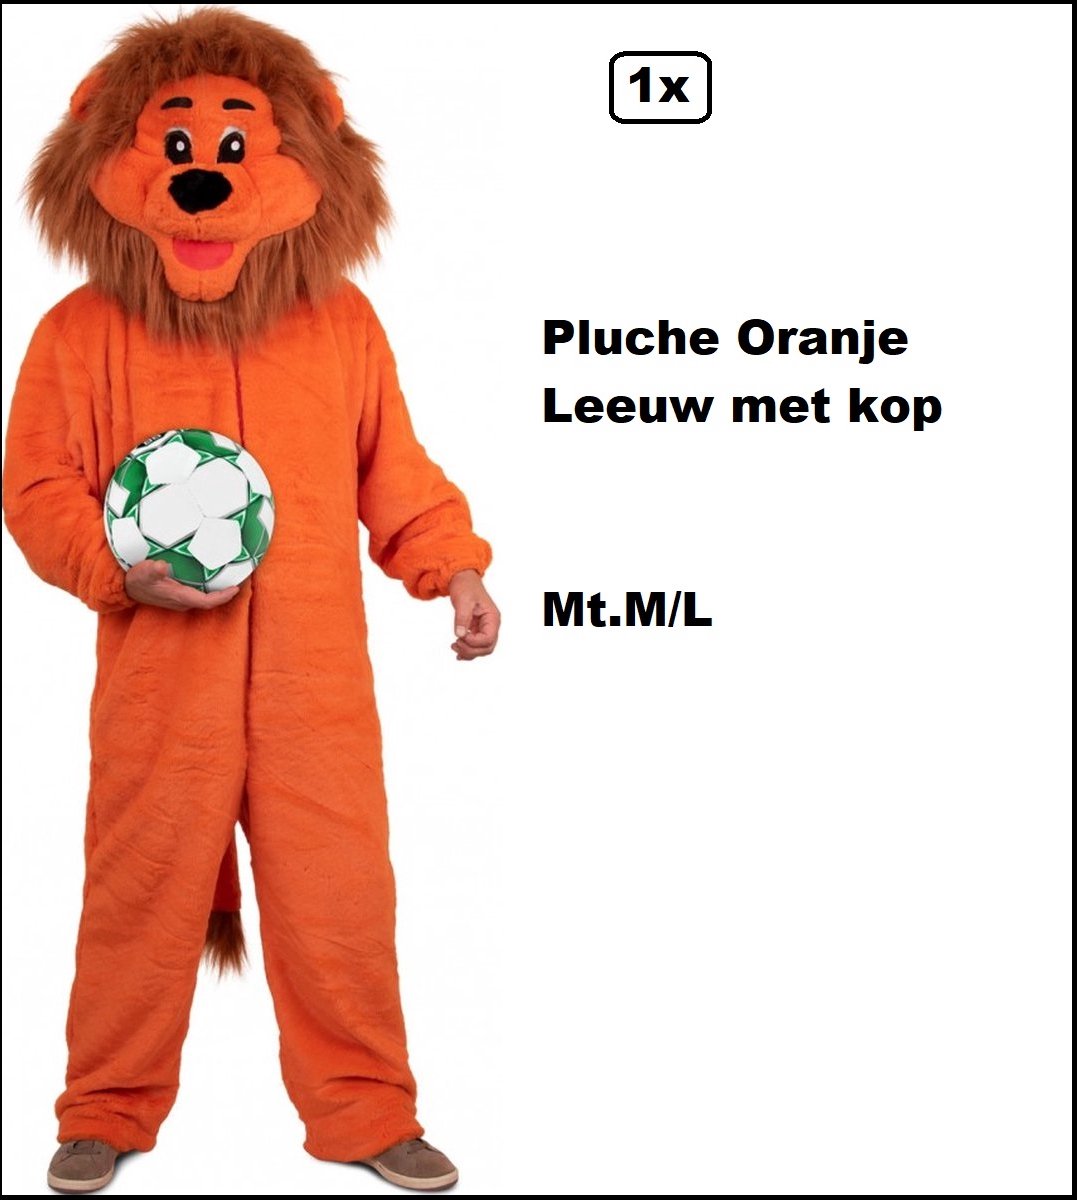 Pluche Oranje Leeuw met kop mascotte maat M/L+ - Holland Oranje Nederland thema feest party festival dieren